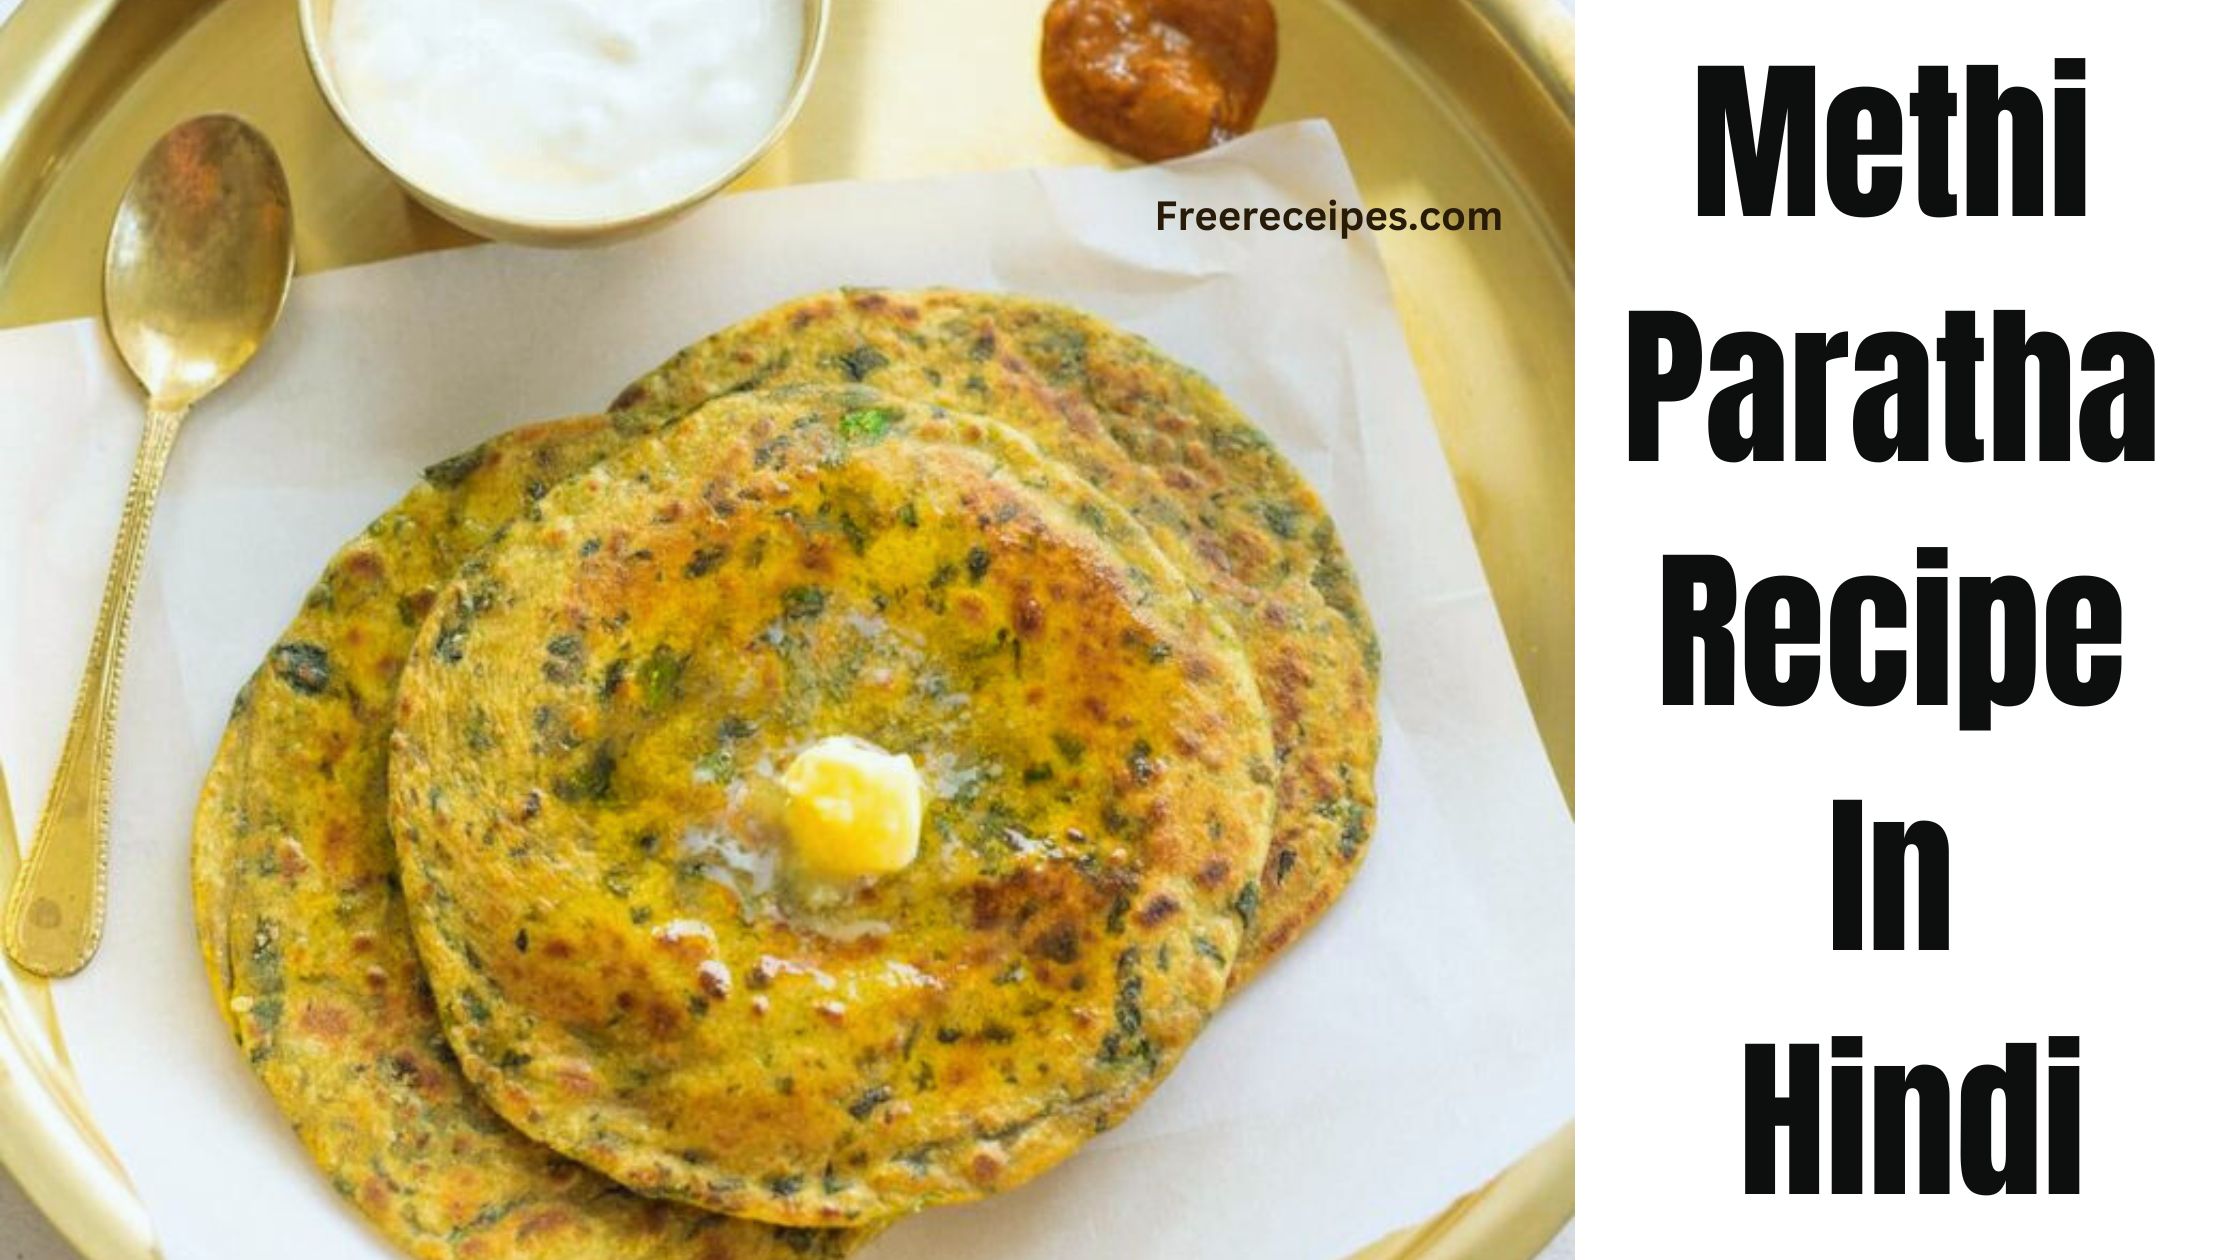 Methi Paratha Recipe In Hindi